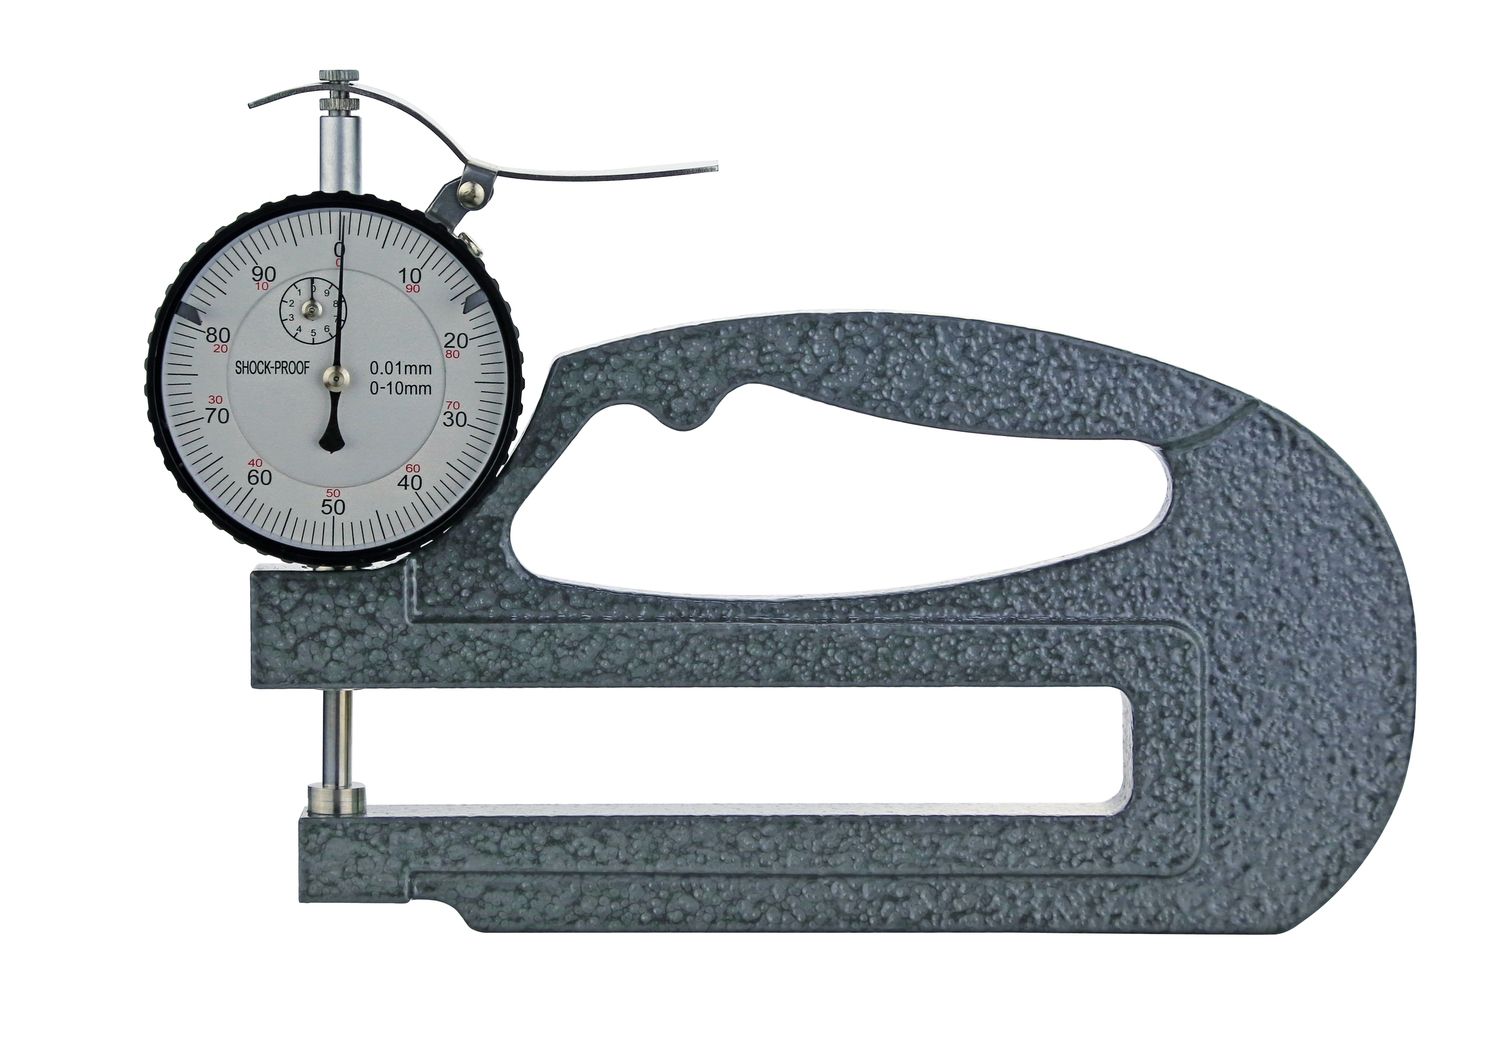 Analoges Dicken-Messgerät 0-10 x 120 mm | 0,01 mm mit Messuhr und Anlifthebel